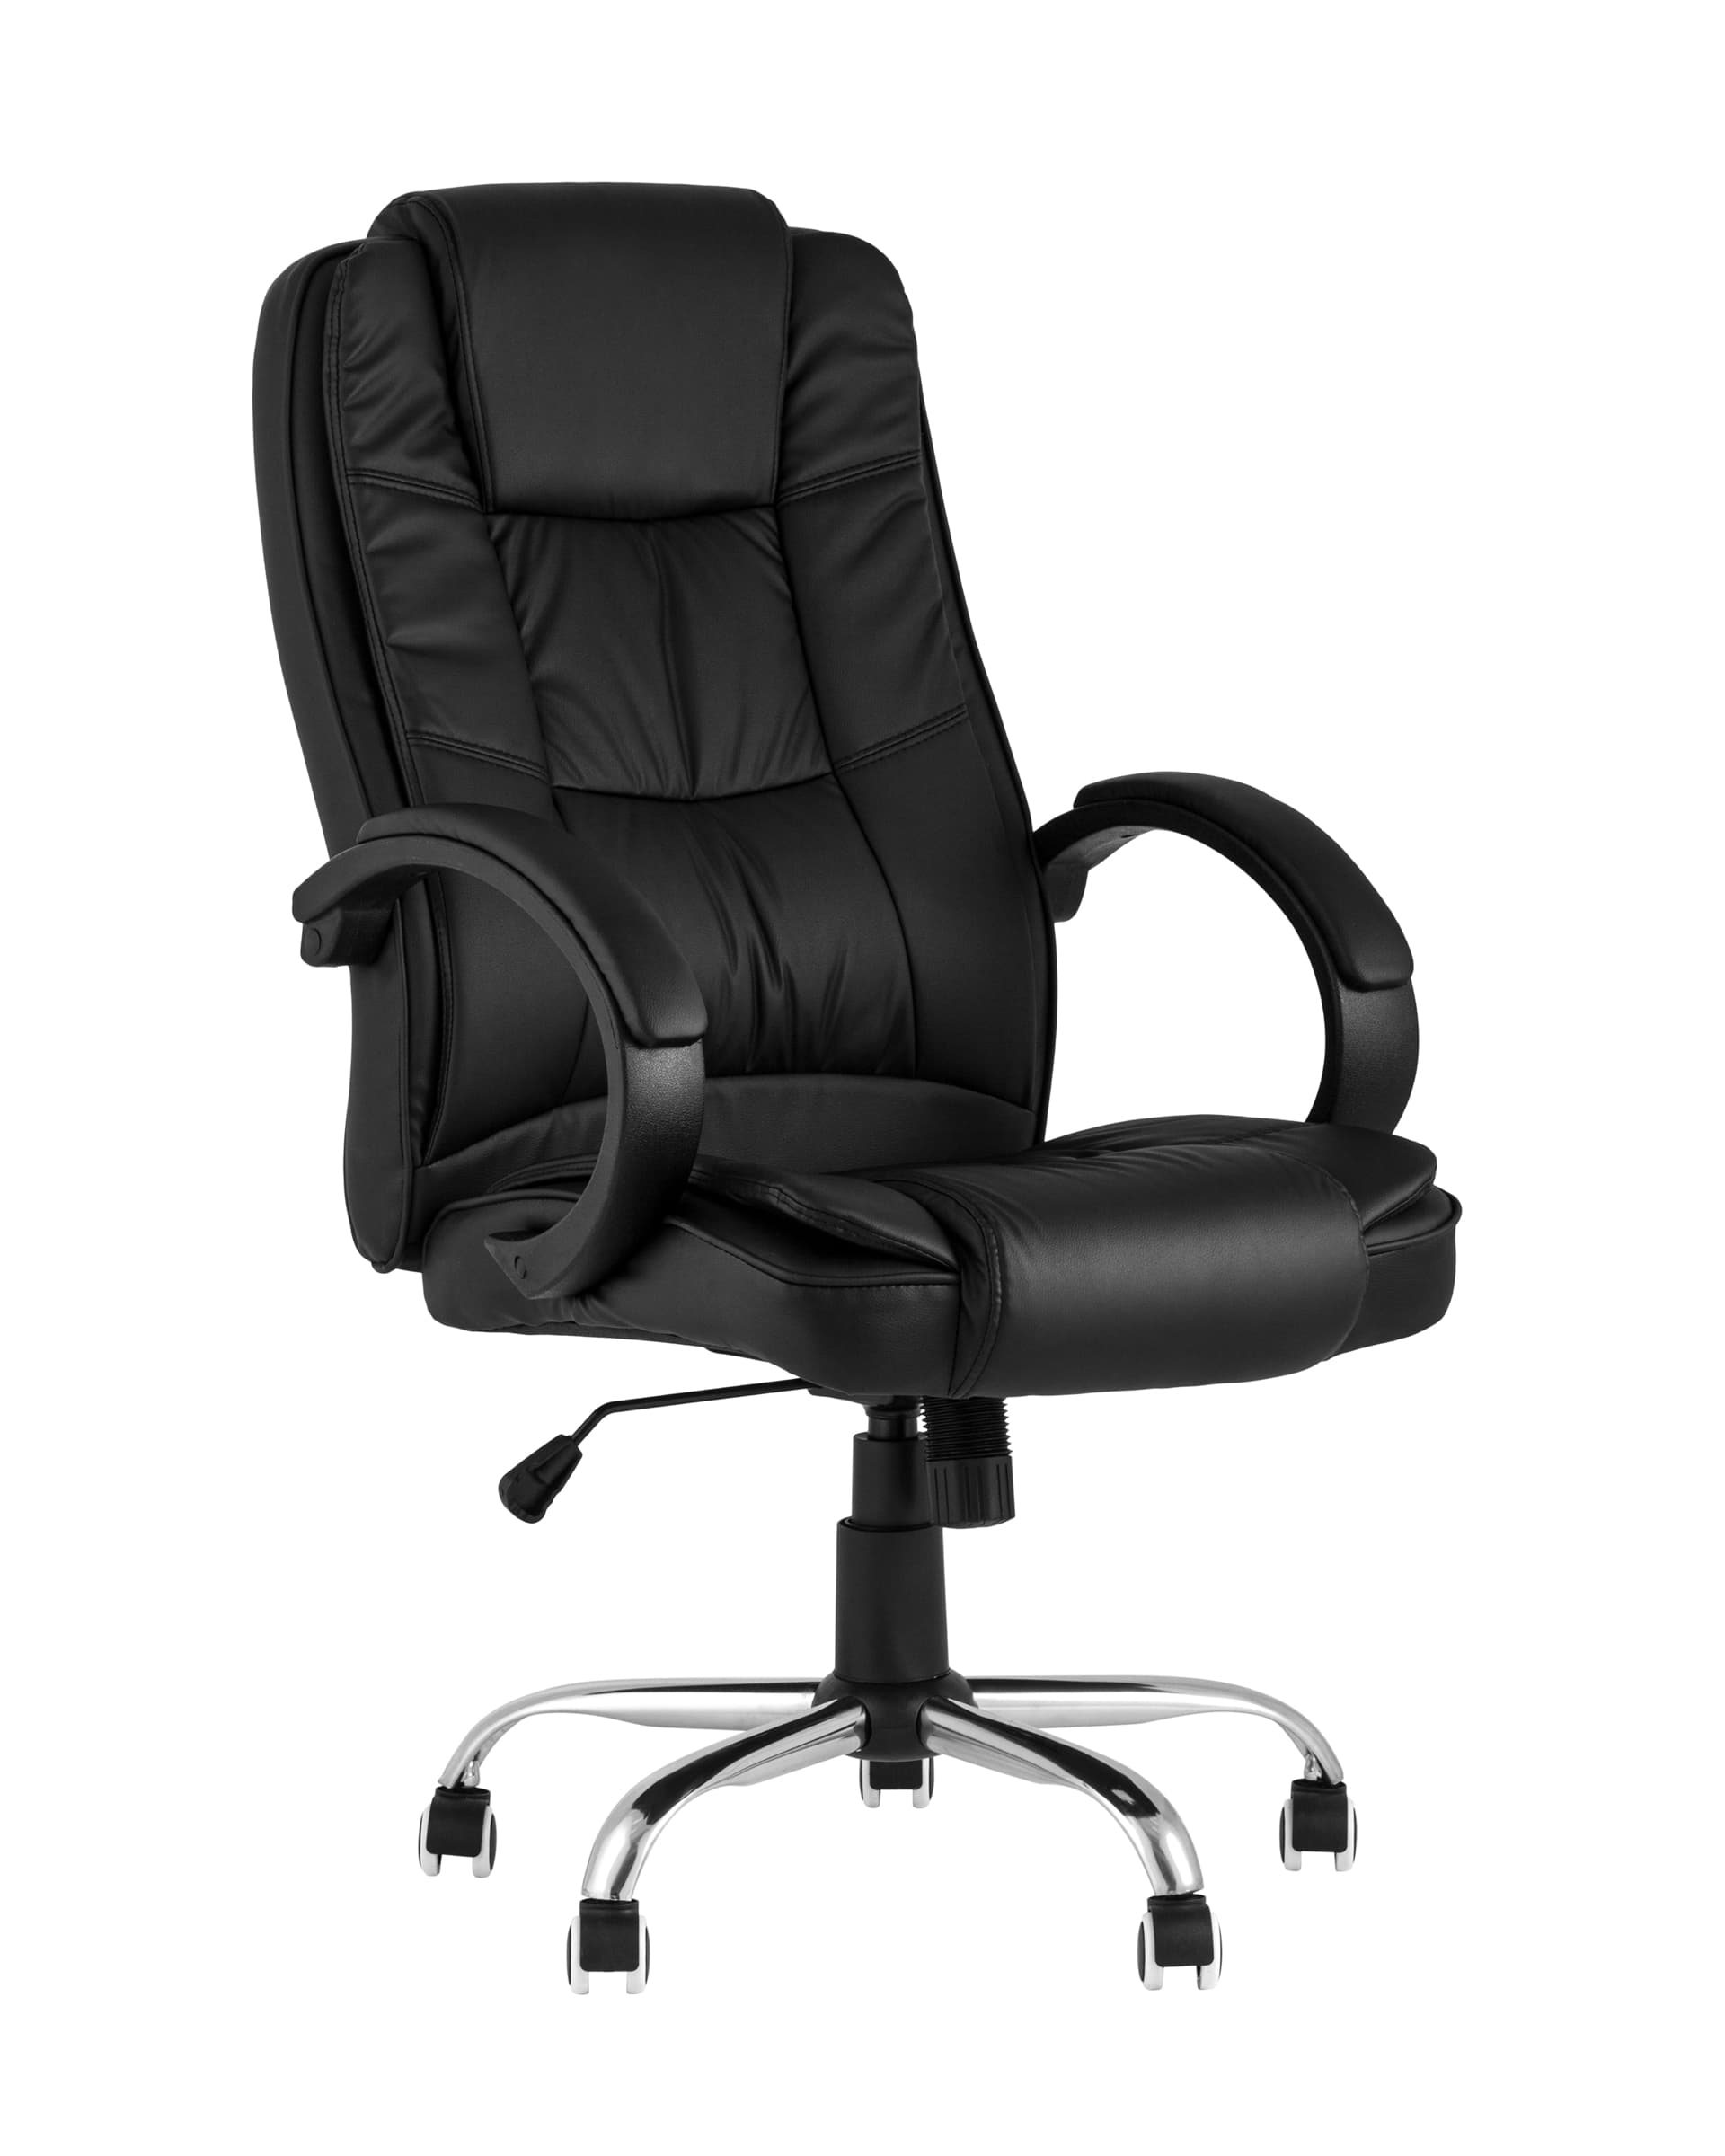 Компьютерное кресло TopChairs Atlant офисное черное обивка экокожа, механизм качания Top Gun